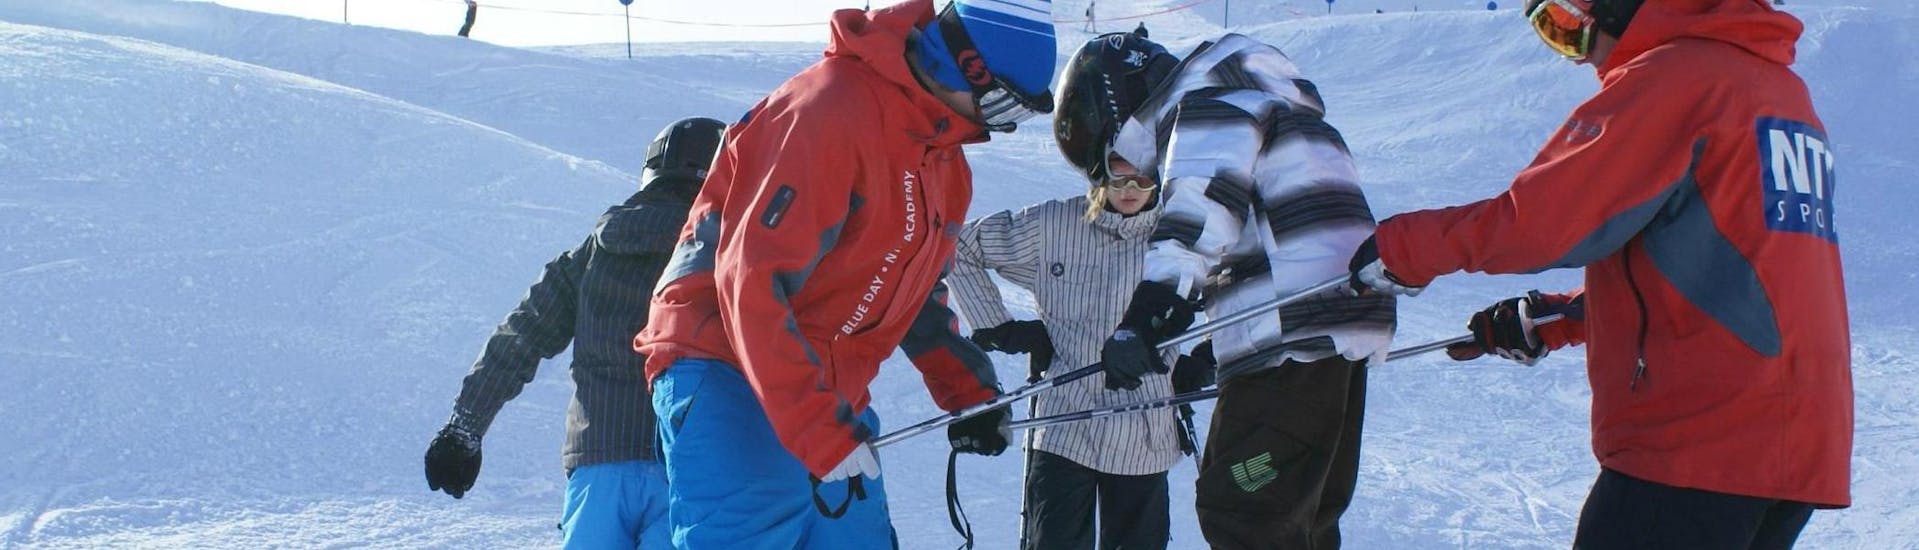 Cours de ski Enfants dès 9 ans - Avancé.